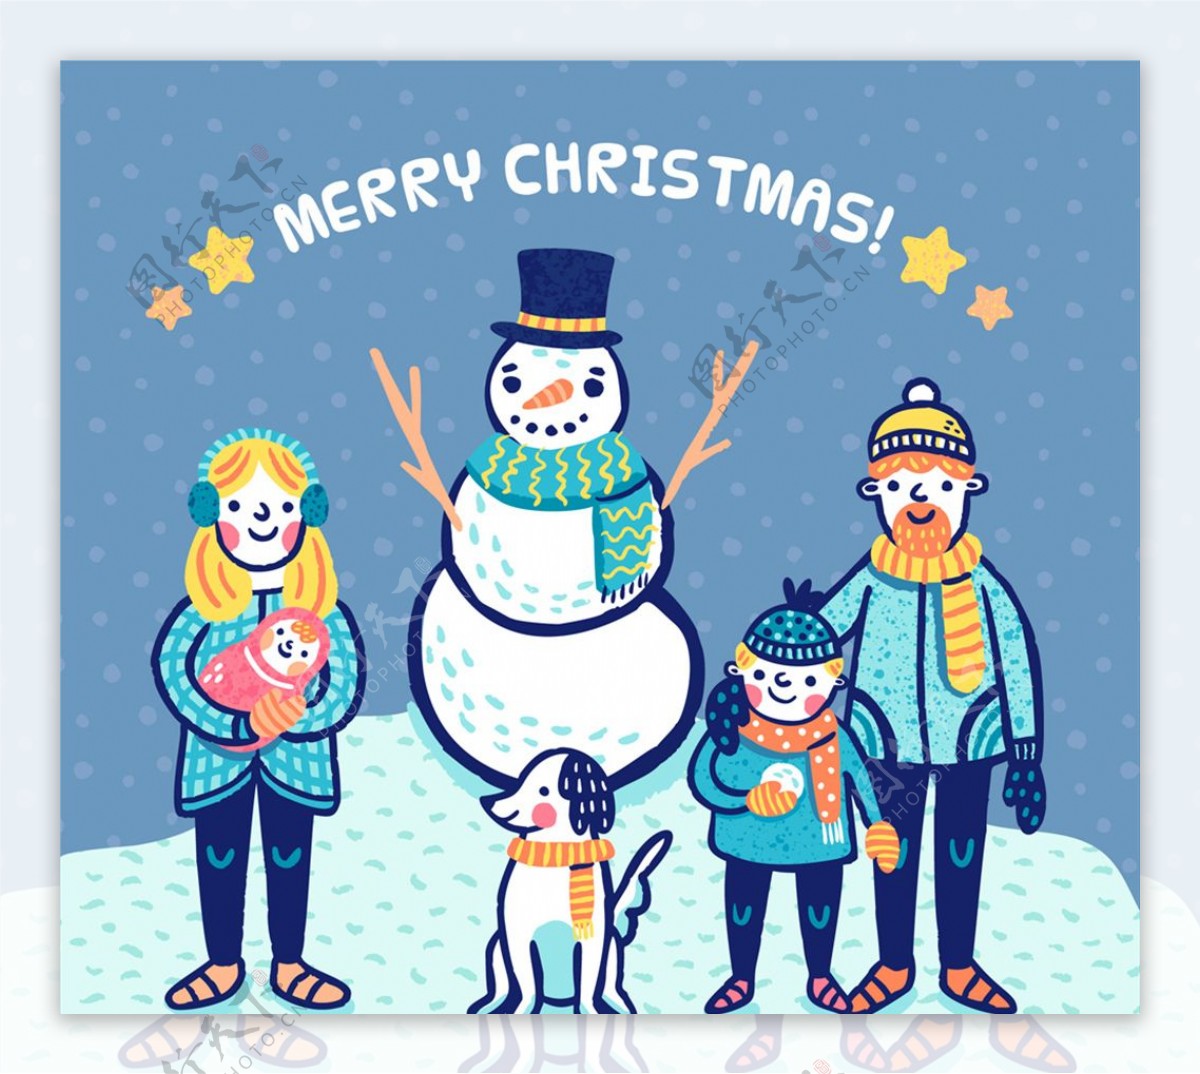 彩绘圣诞节四口之家和雪人矢量图